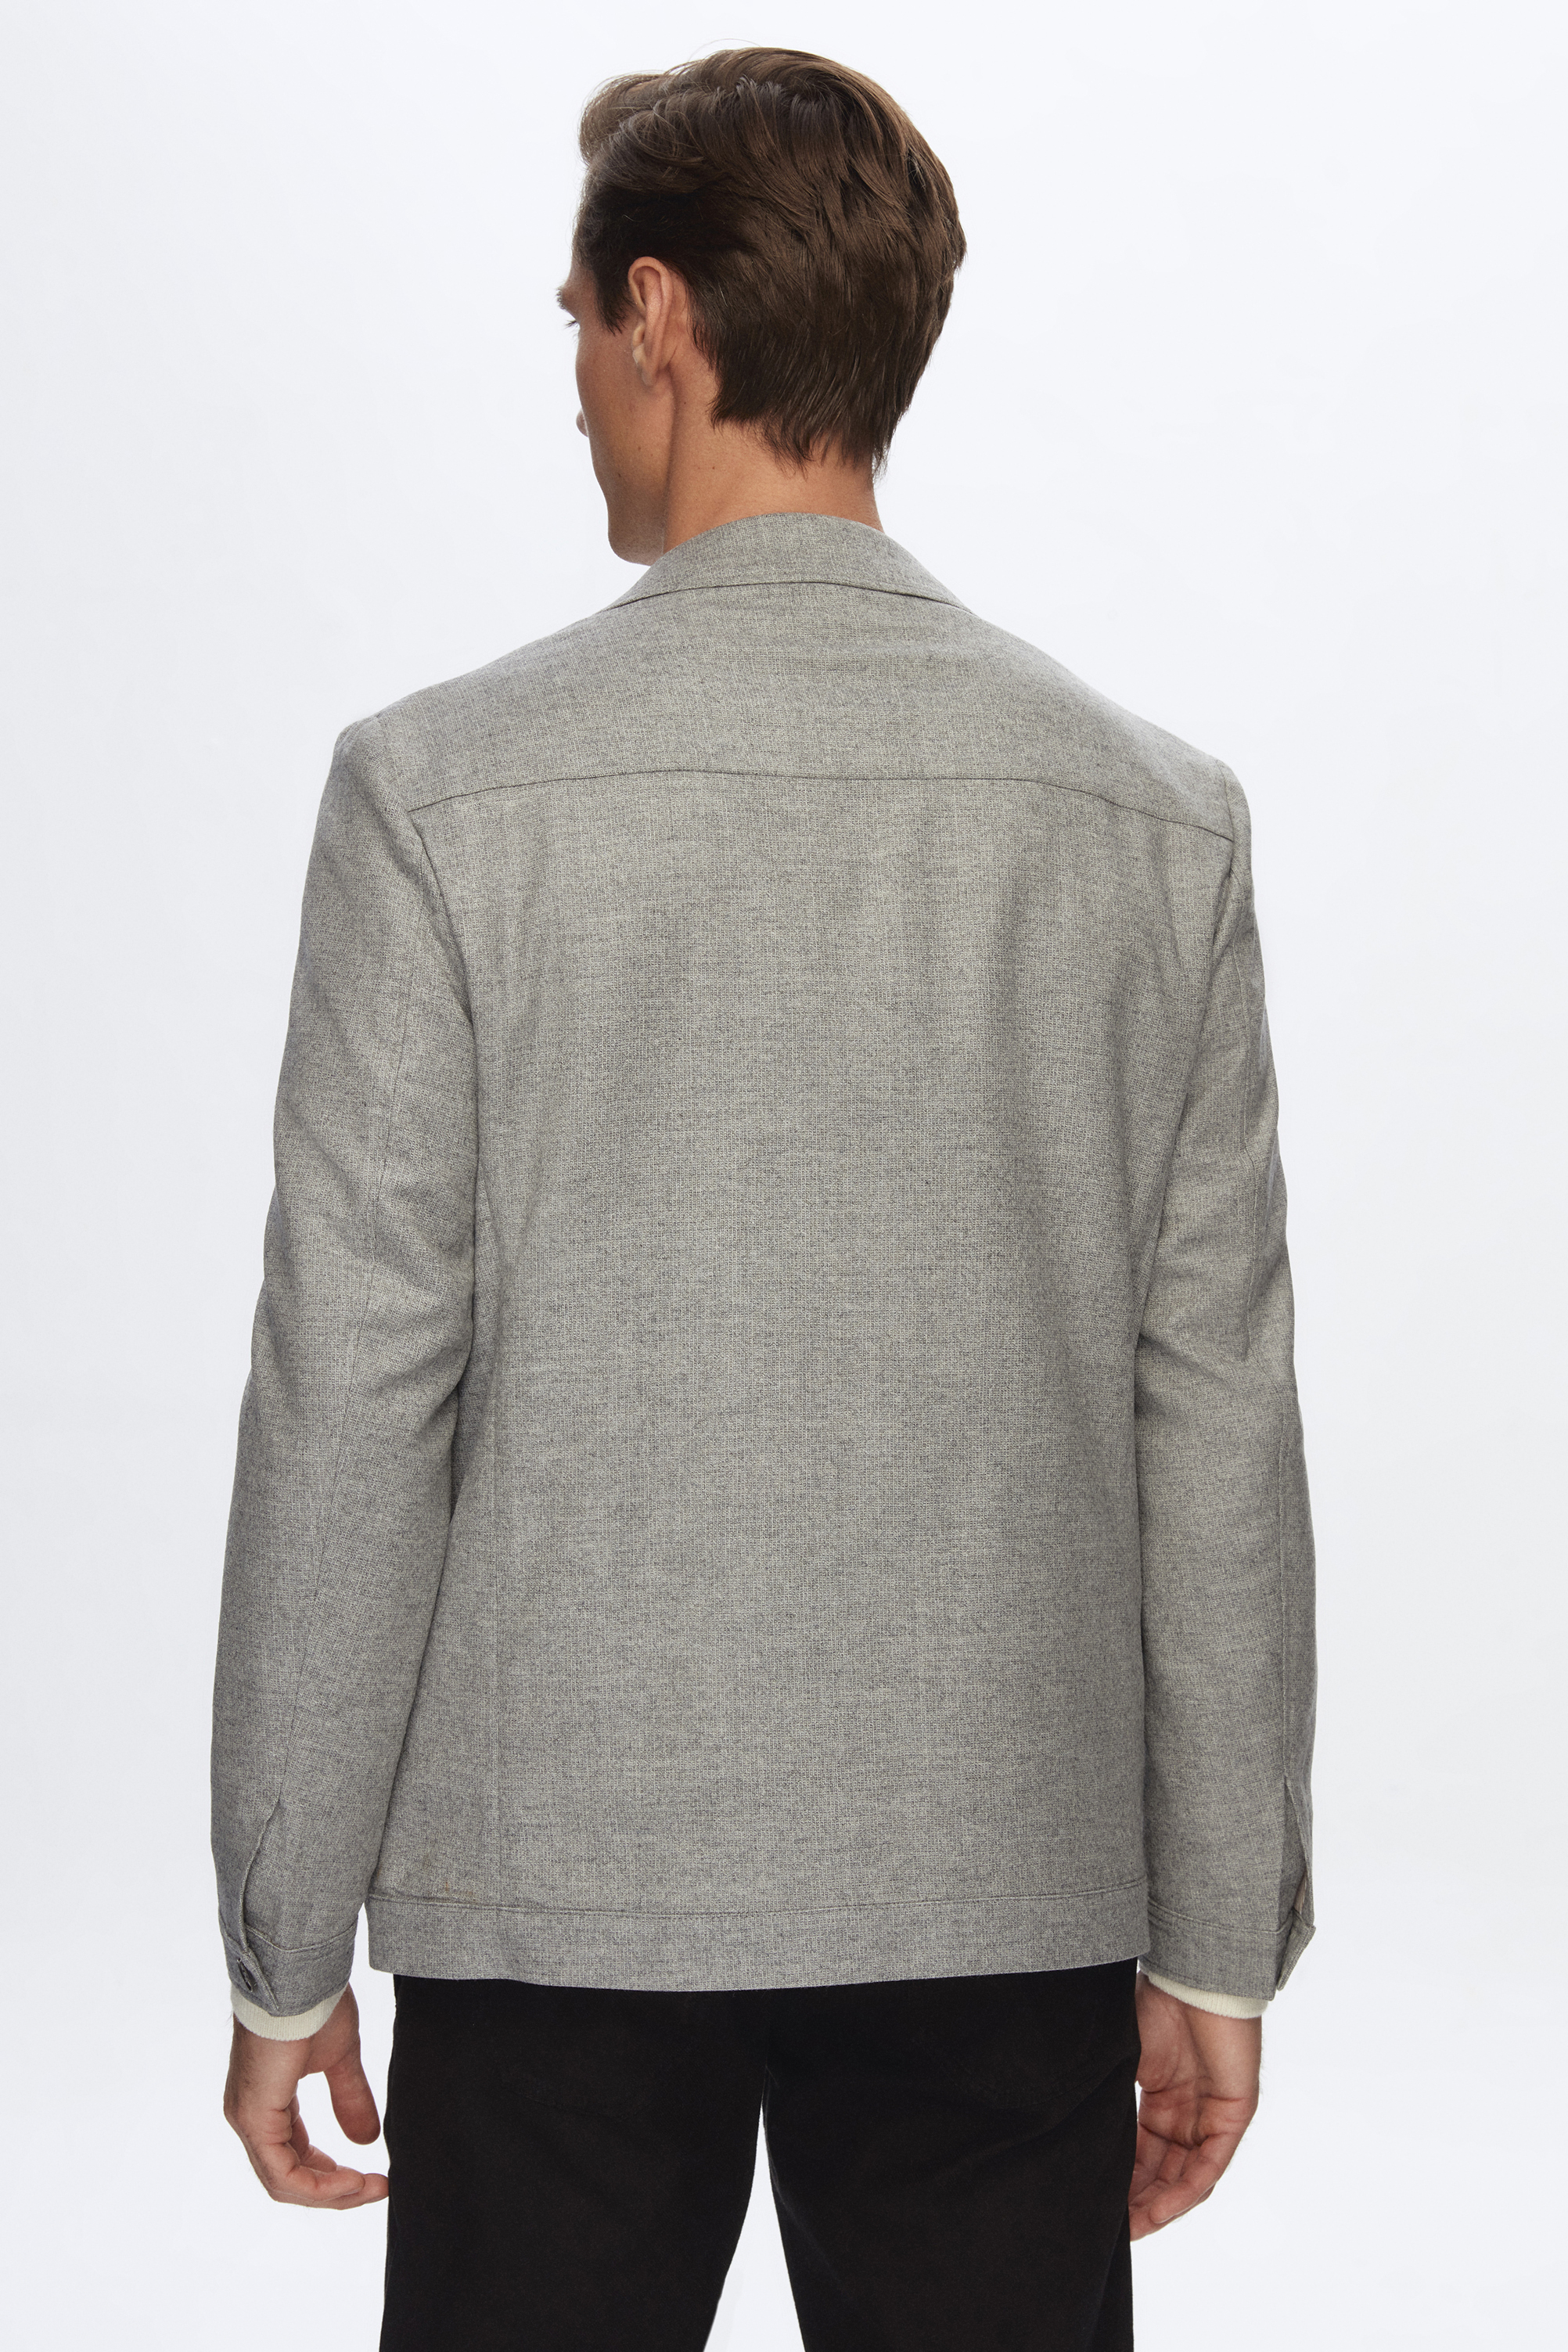 Damat Tween Damat Comfort Gri Düz %100 Yün Kumaş Ceket. 4